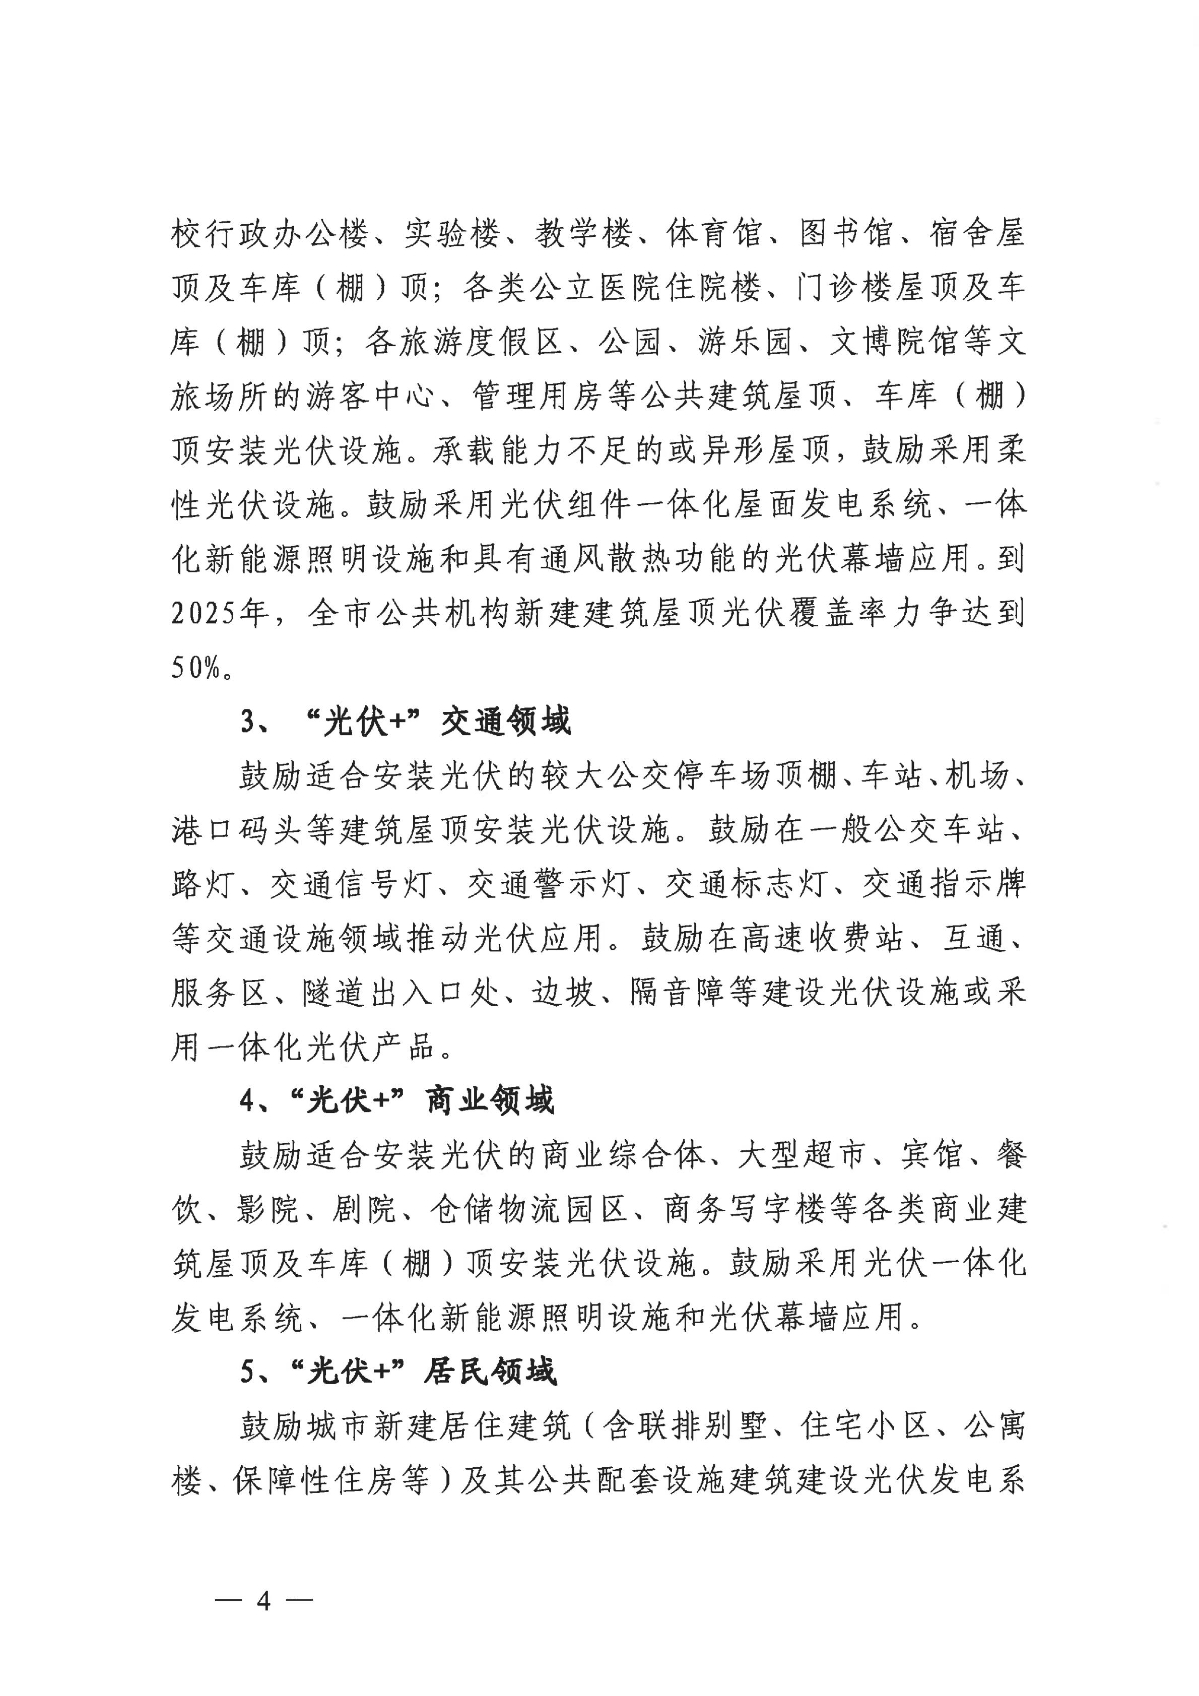 1128关于印发《关于进一步加快杭州市光伏发电项目建设的实施意见》的通知_03.jpg